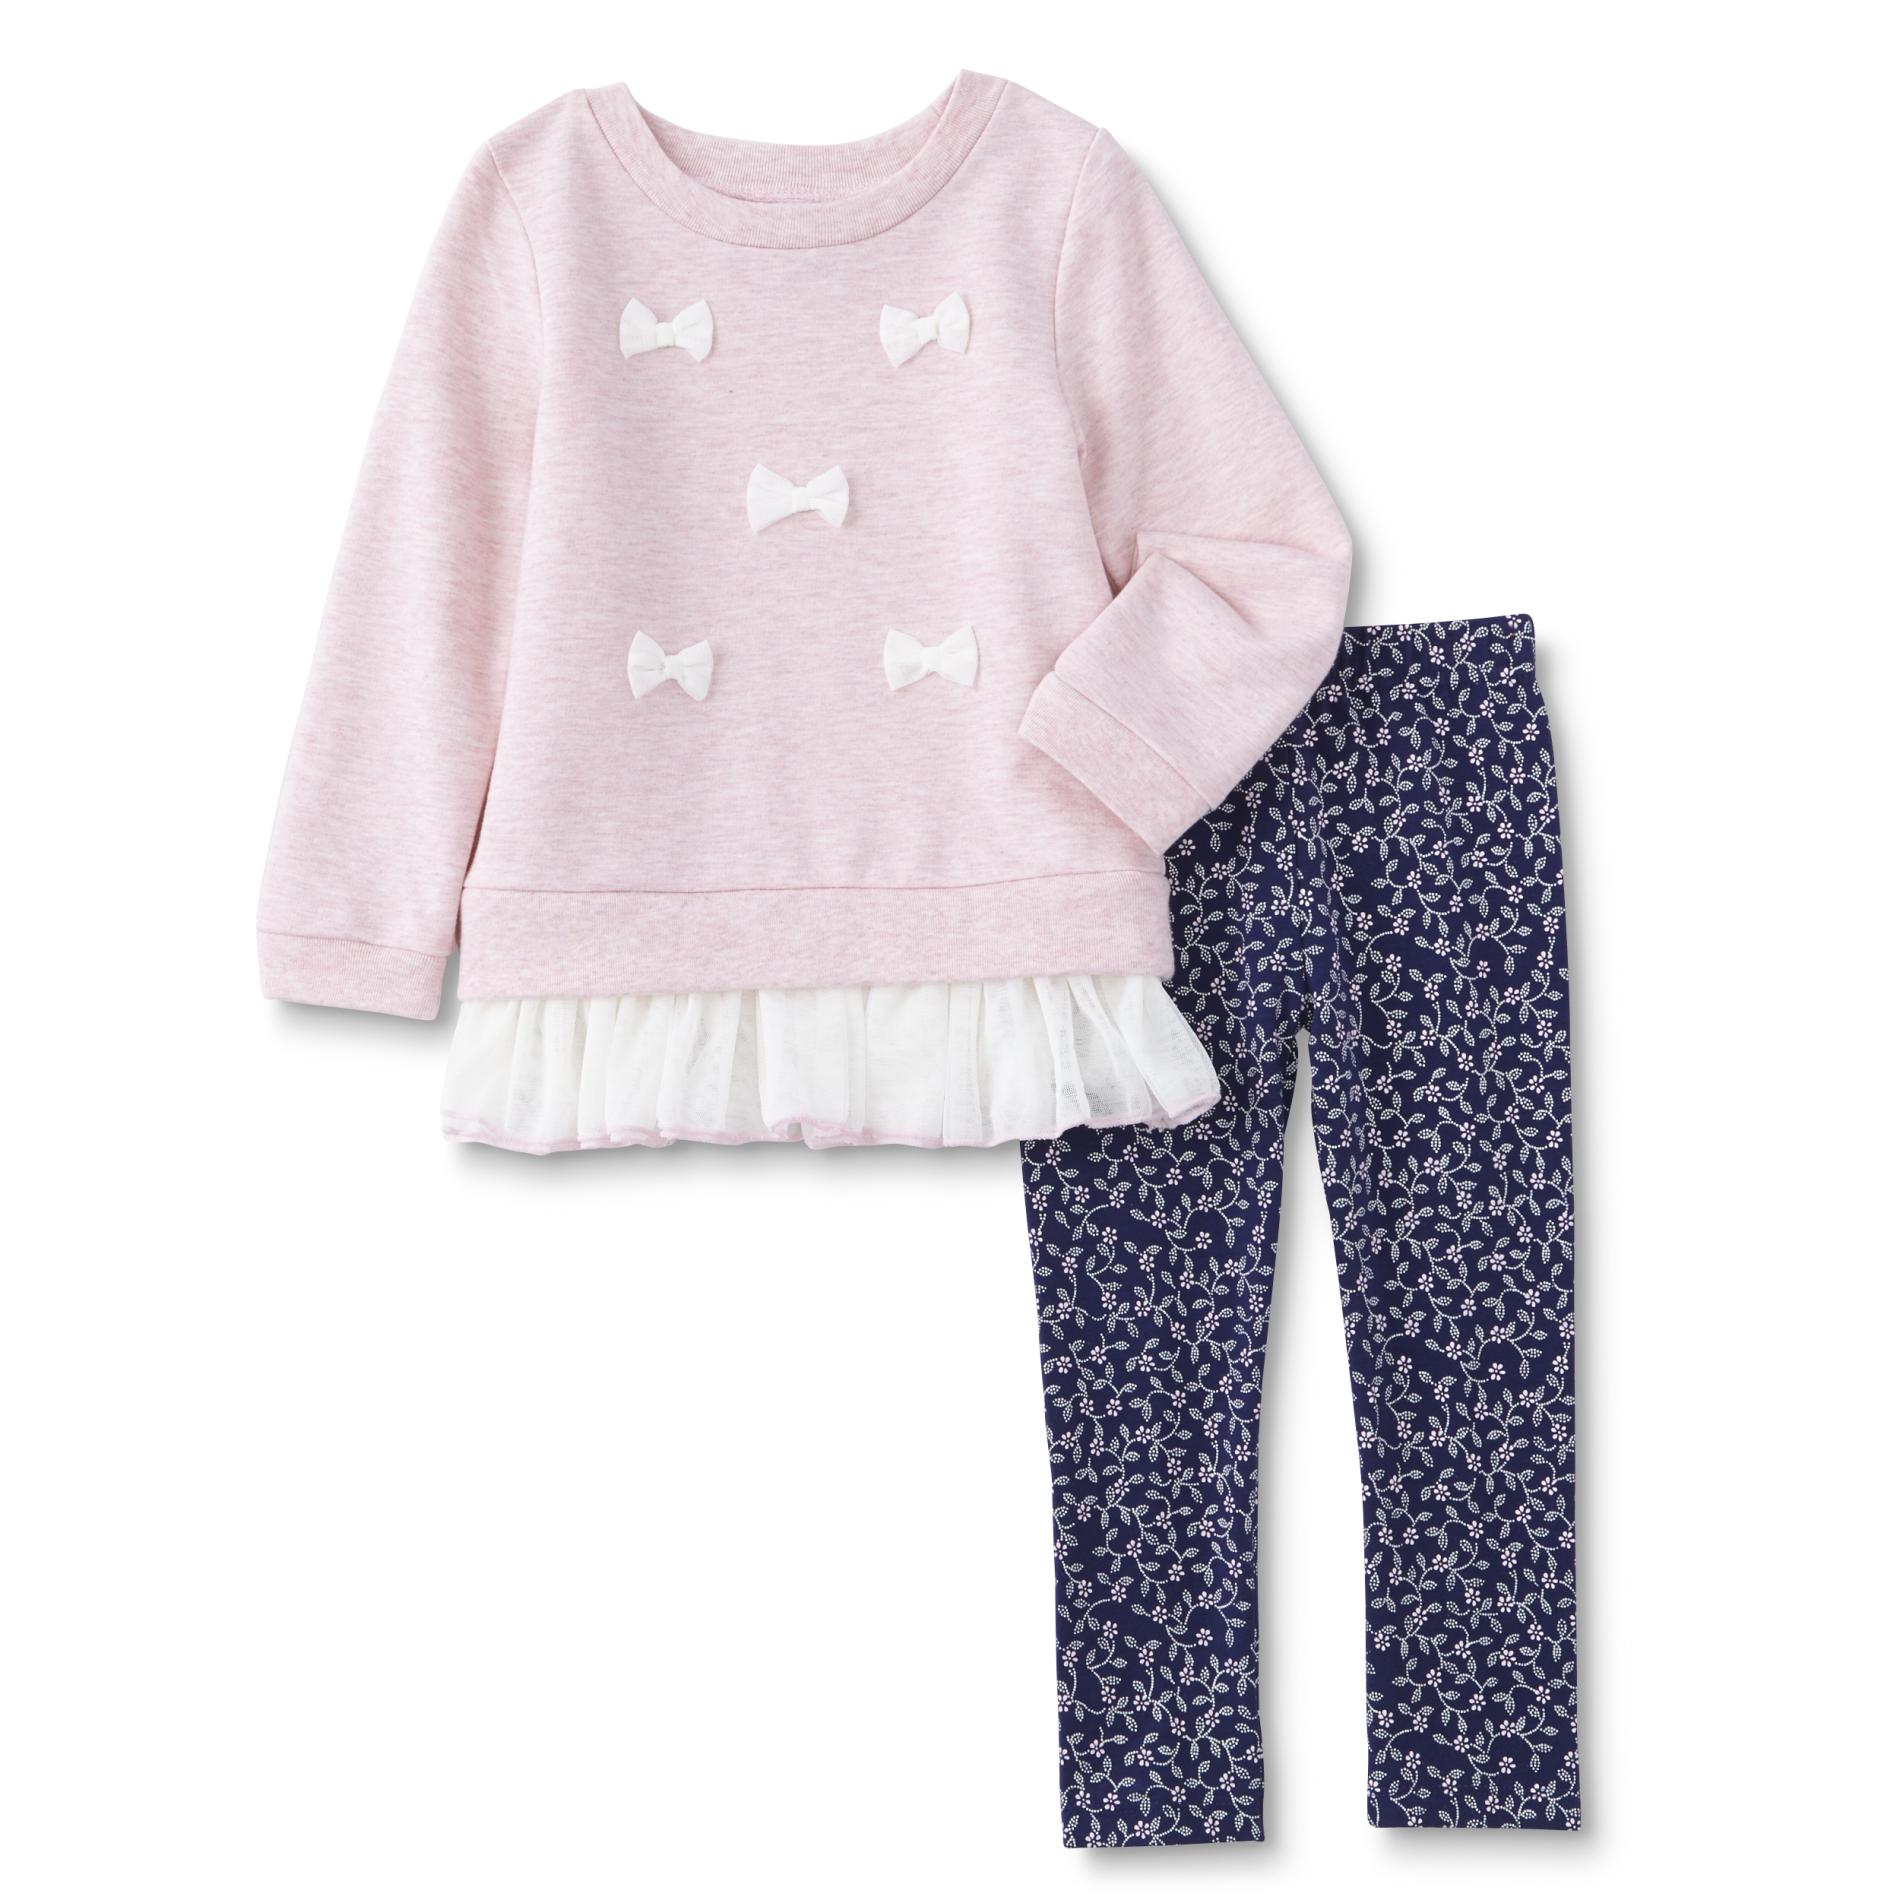 Infant & Toddler Girl's Sweatshirt & Pants - Floral